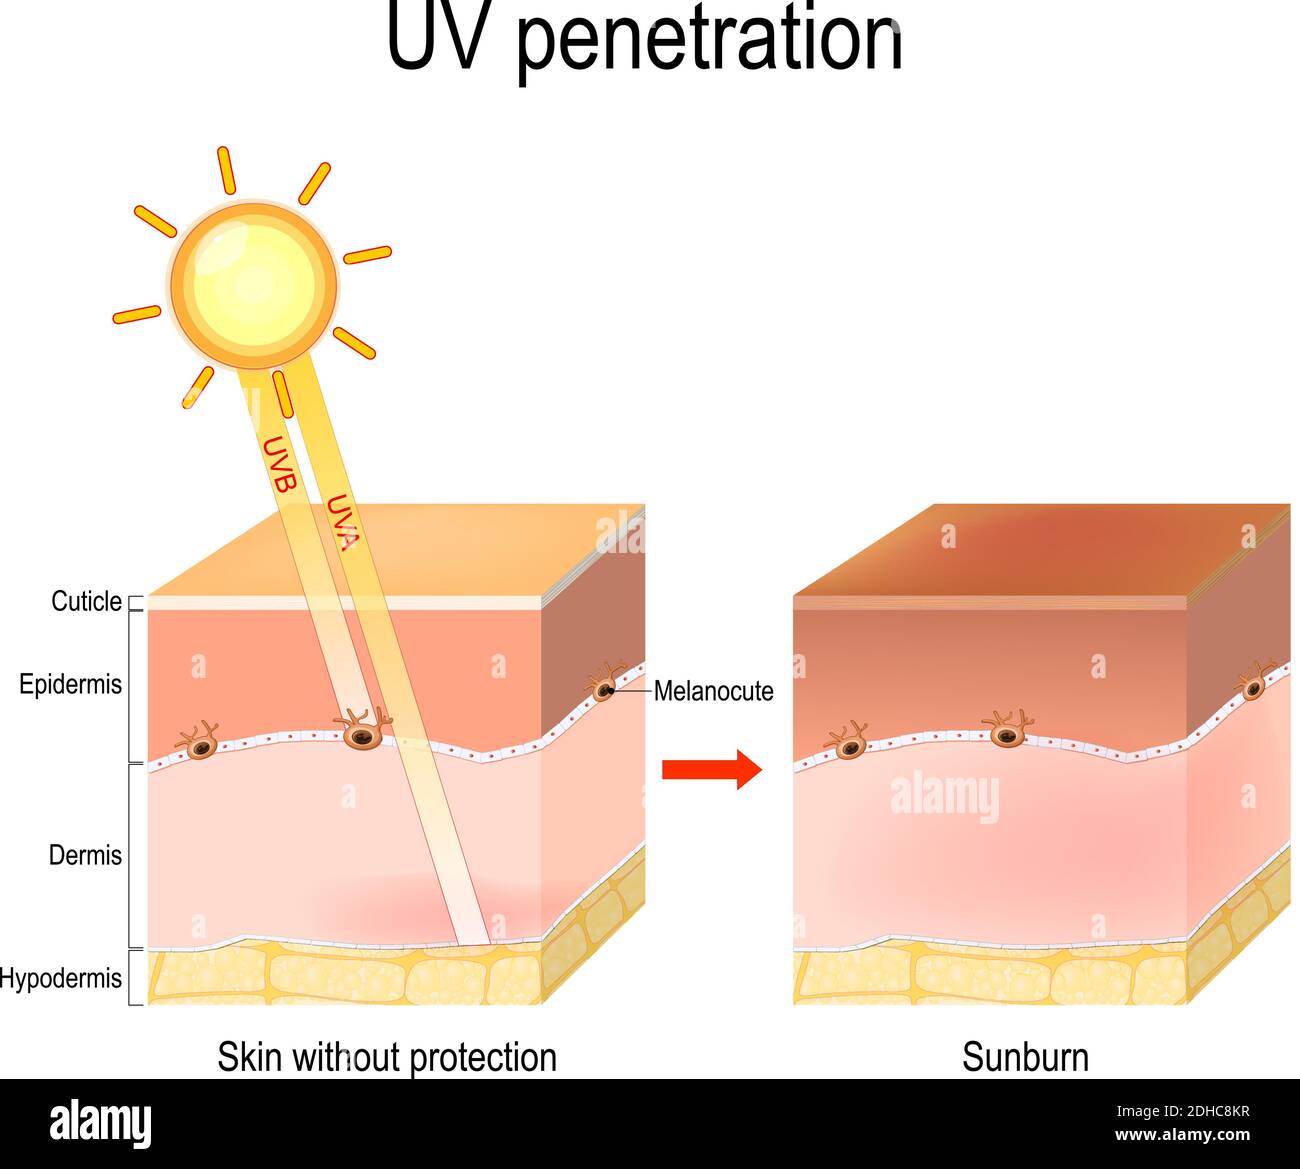 uv-Eindringen in die Schichten der menschlichen Haut. UVB-Strahlen dringen nicht tief in die Haut ein, da sie von der Epidermis blockiert werden. UVA-Durchdringung Stock Vektor